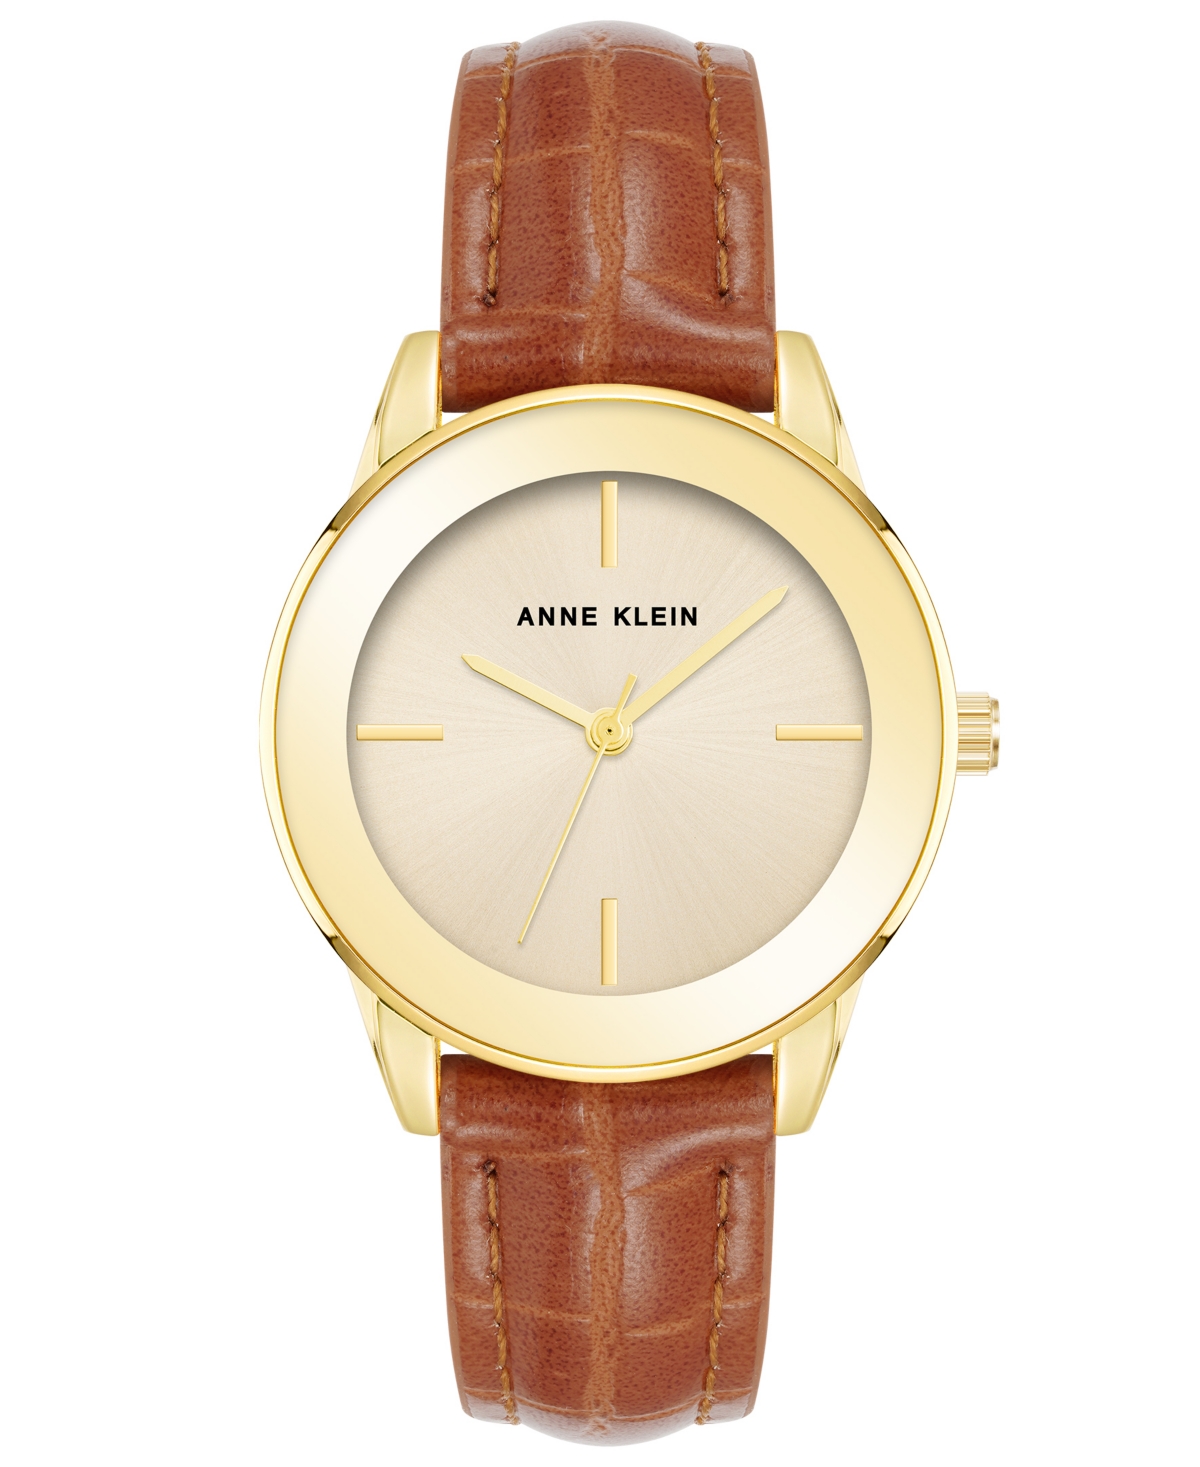 Anne Klein Women's Three Hand Quartz Round Brown Polyurethane Faux Leather Band Watch, 33mm In Brown-gold-tone